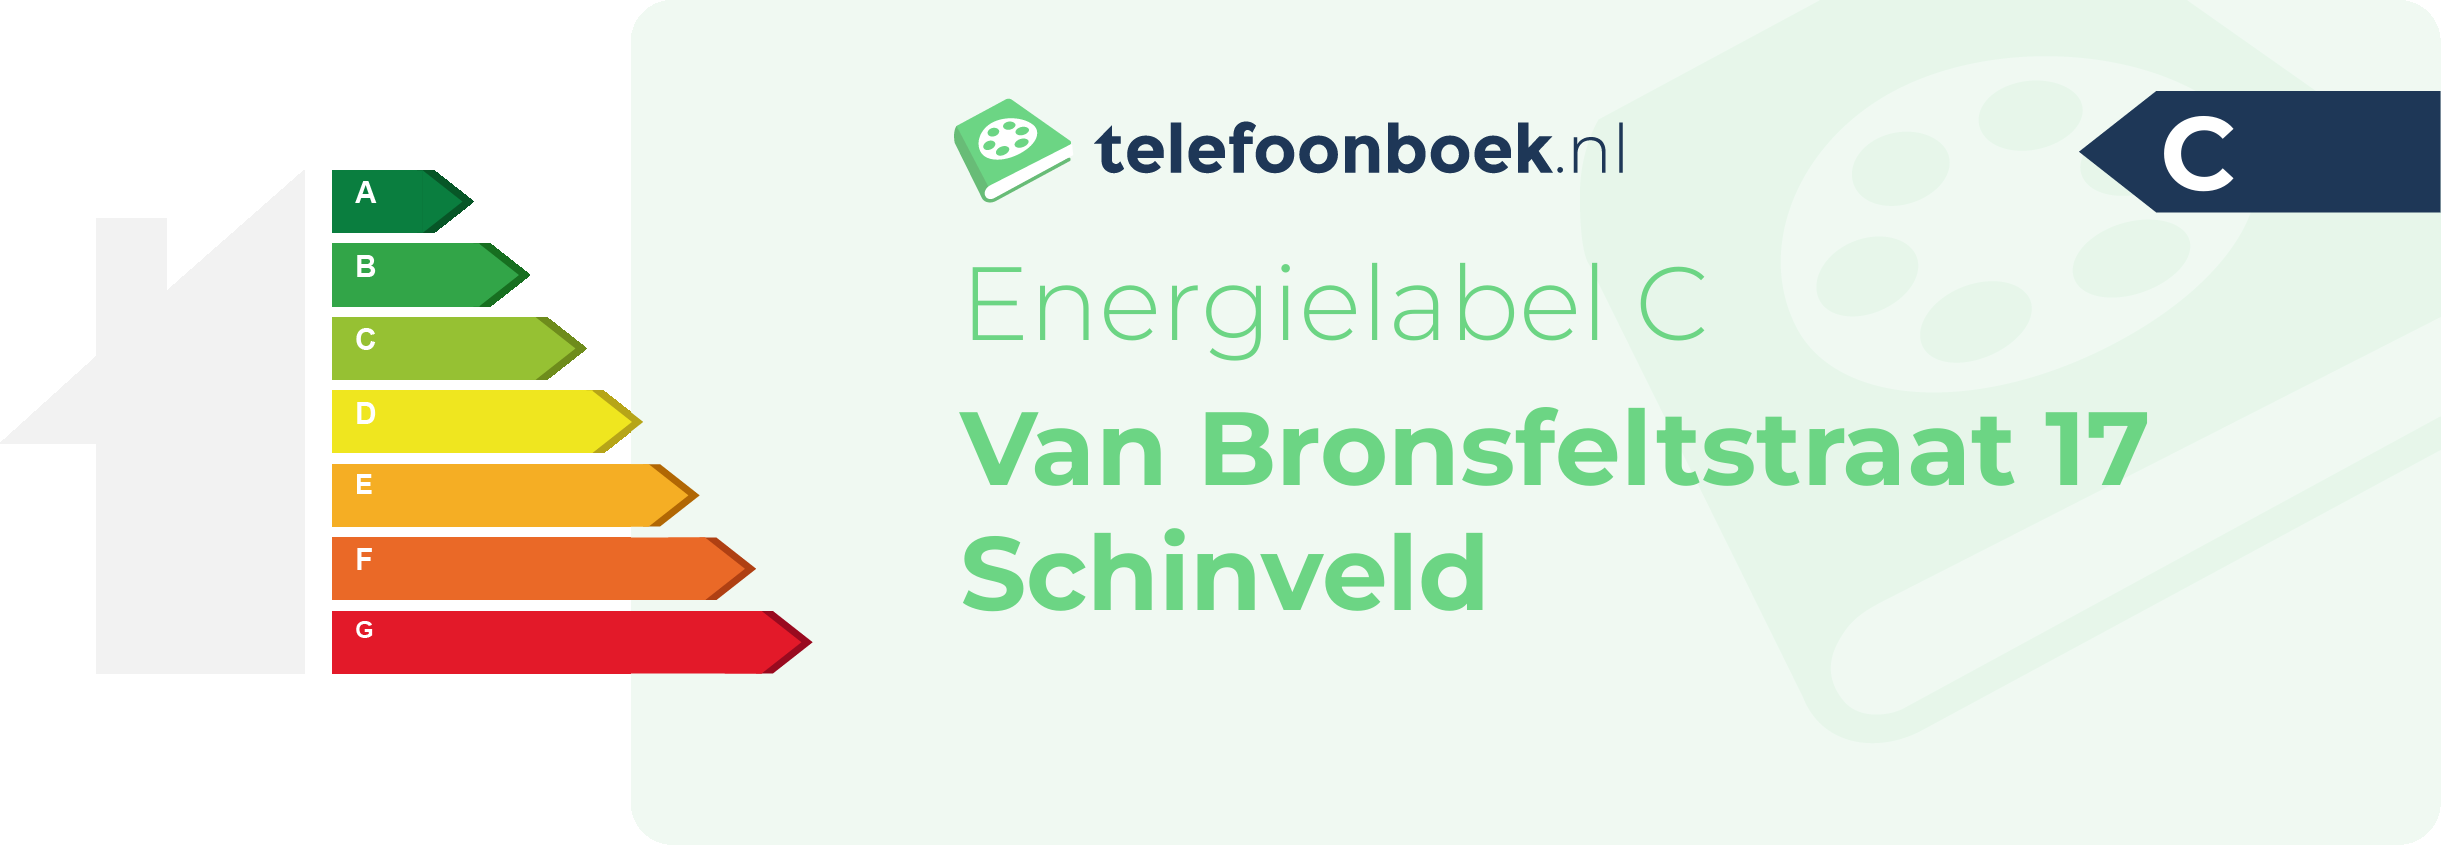 Energielabel Van Bronsfeltstraat 17 Schinveld